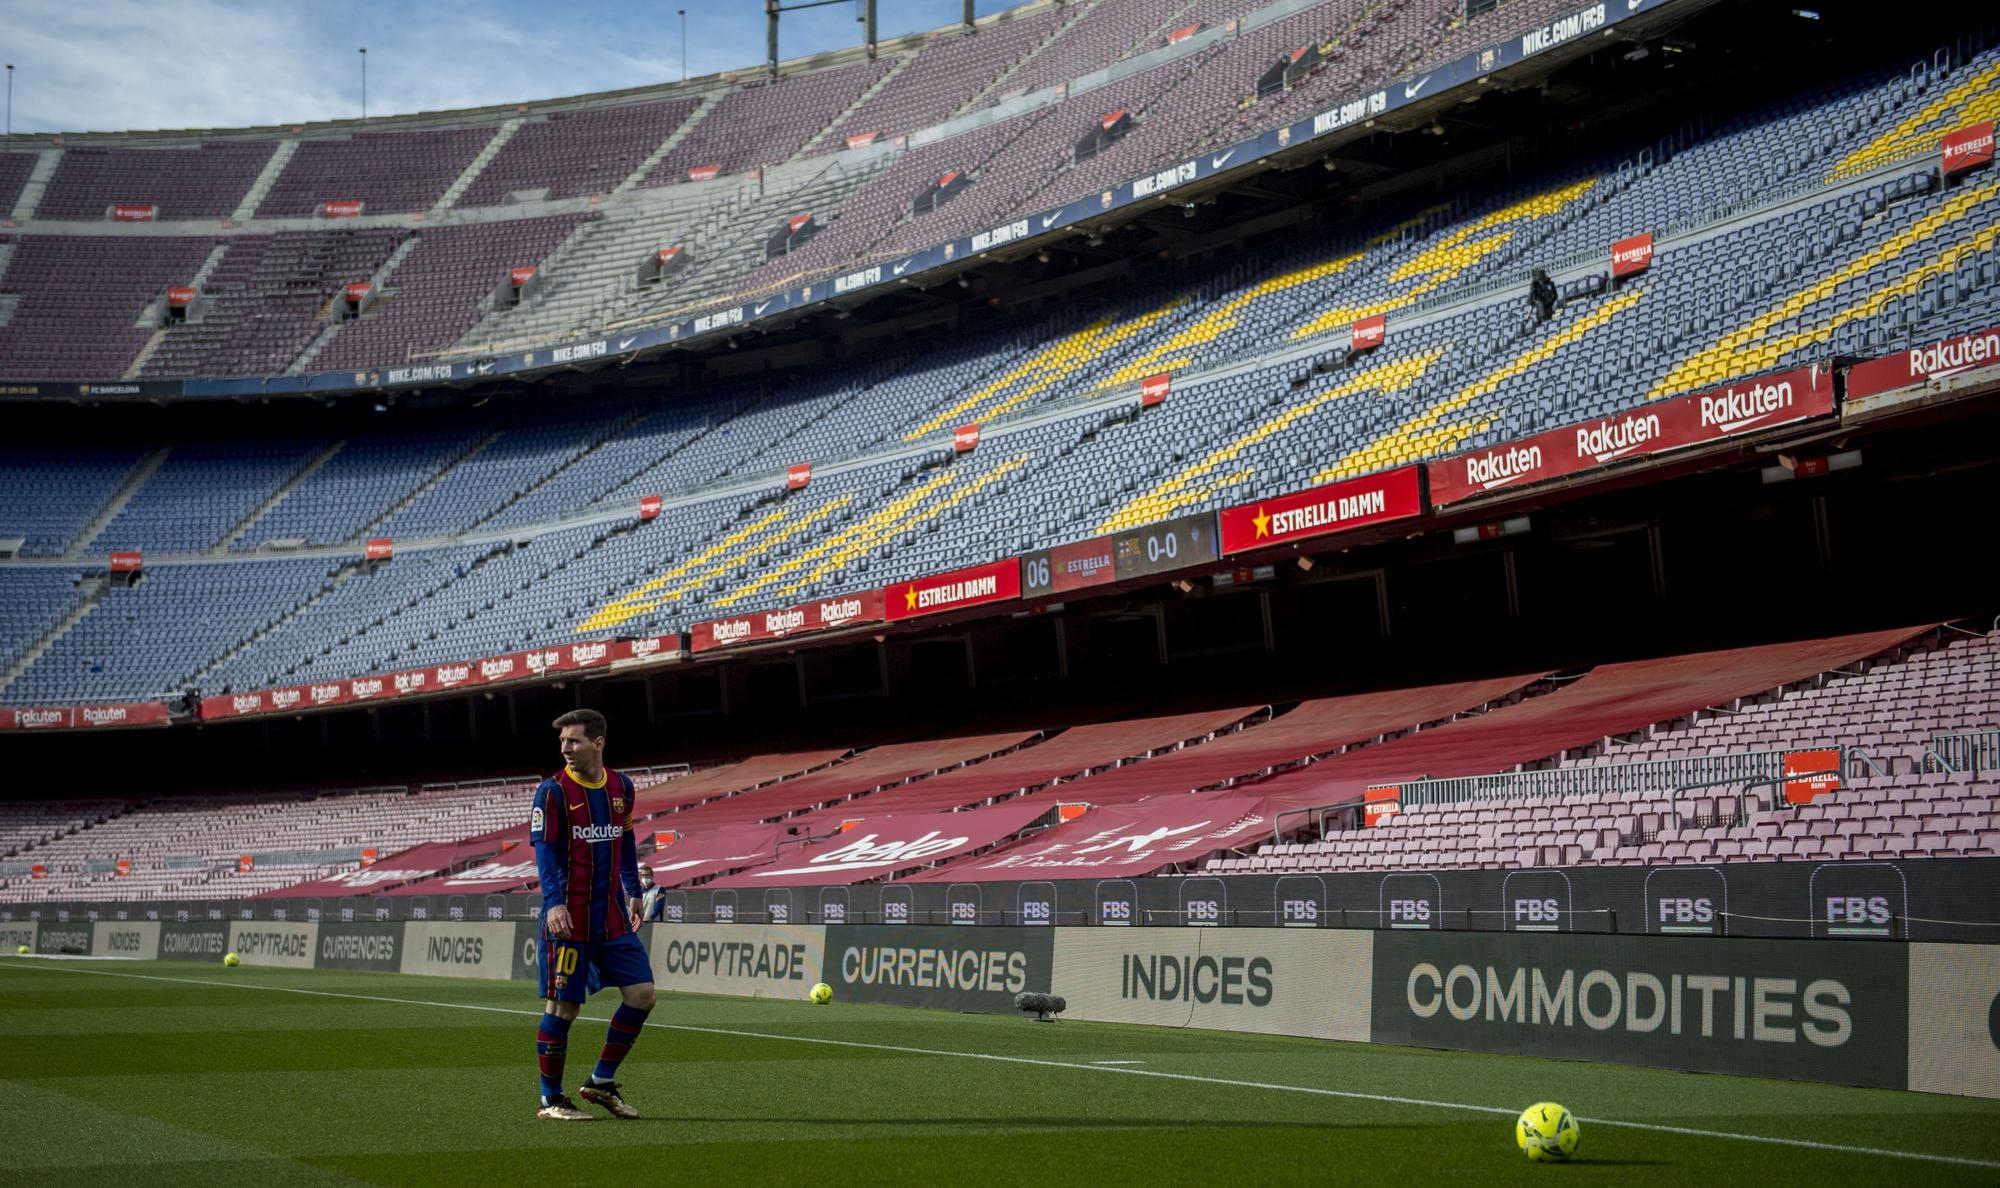 Compositor Libro Guinness de récord mundial Plasticidad Vimos el último partido de Messi con el Barça sin saberlo